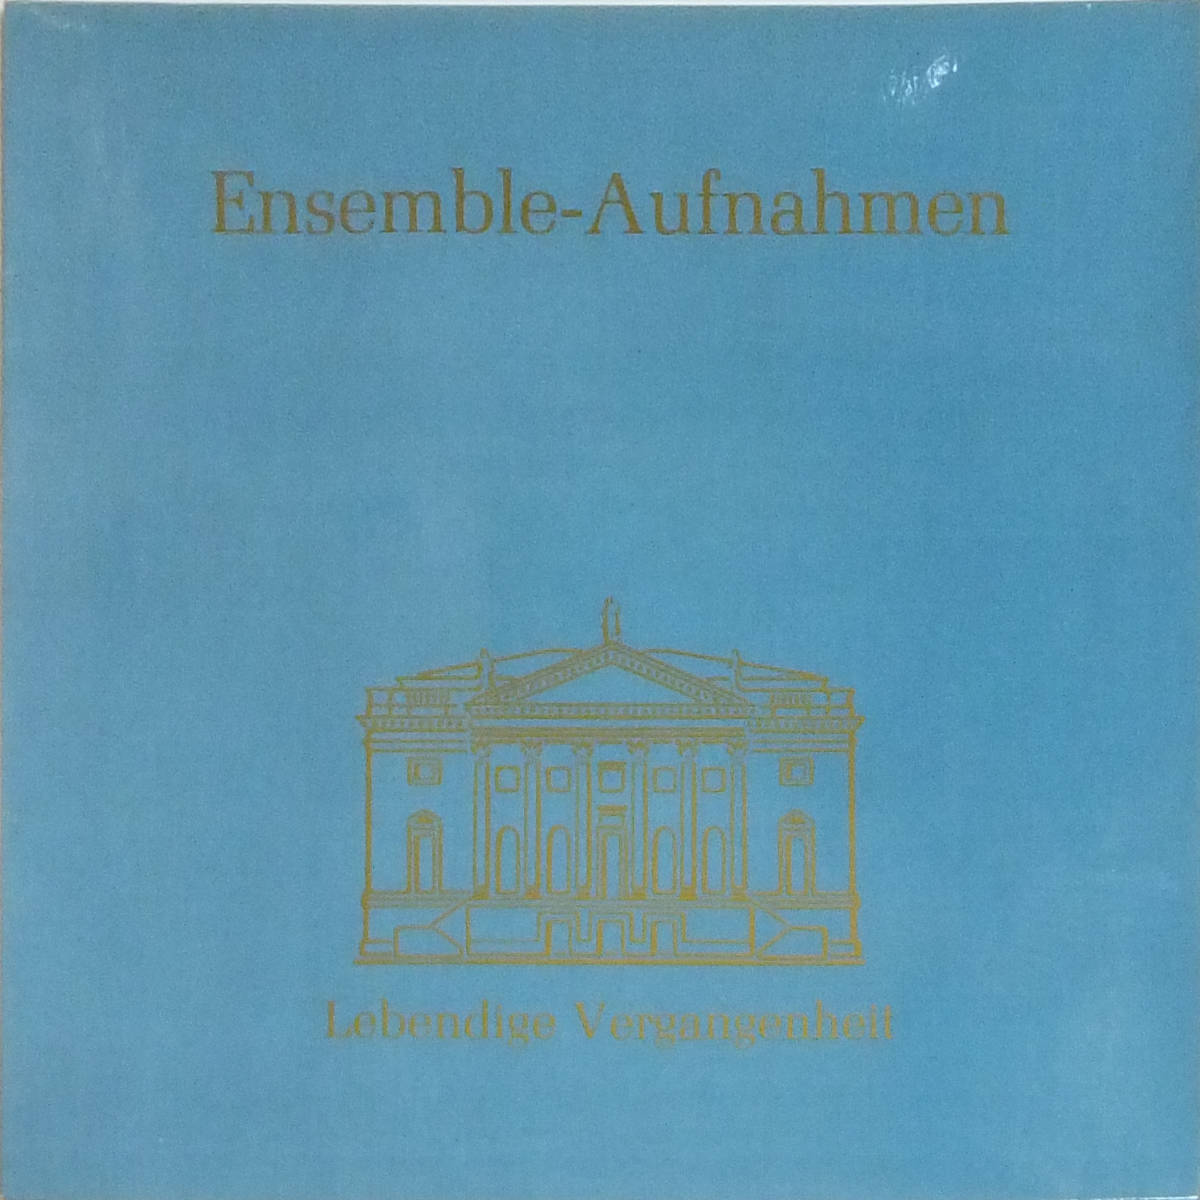 #LP Ensemble-Aufnahmen! L na*be Люгер,ate-re* машина n, Ed uarudo* can доллар, др. 